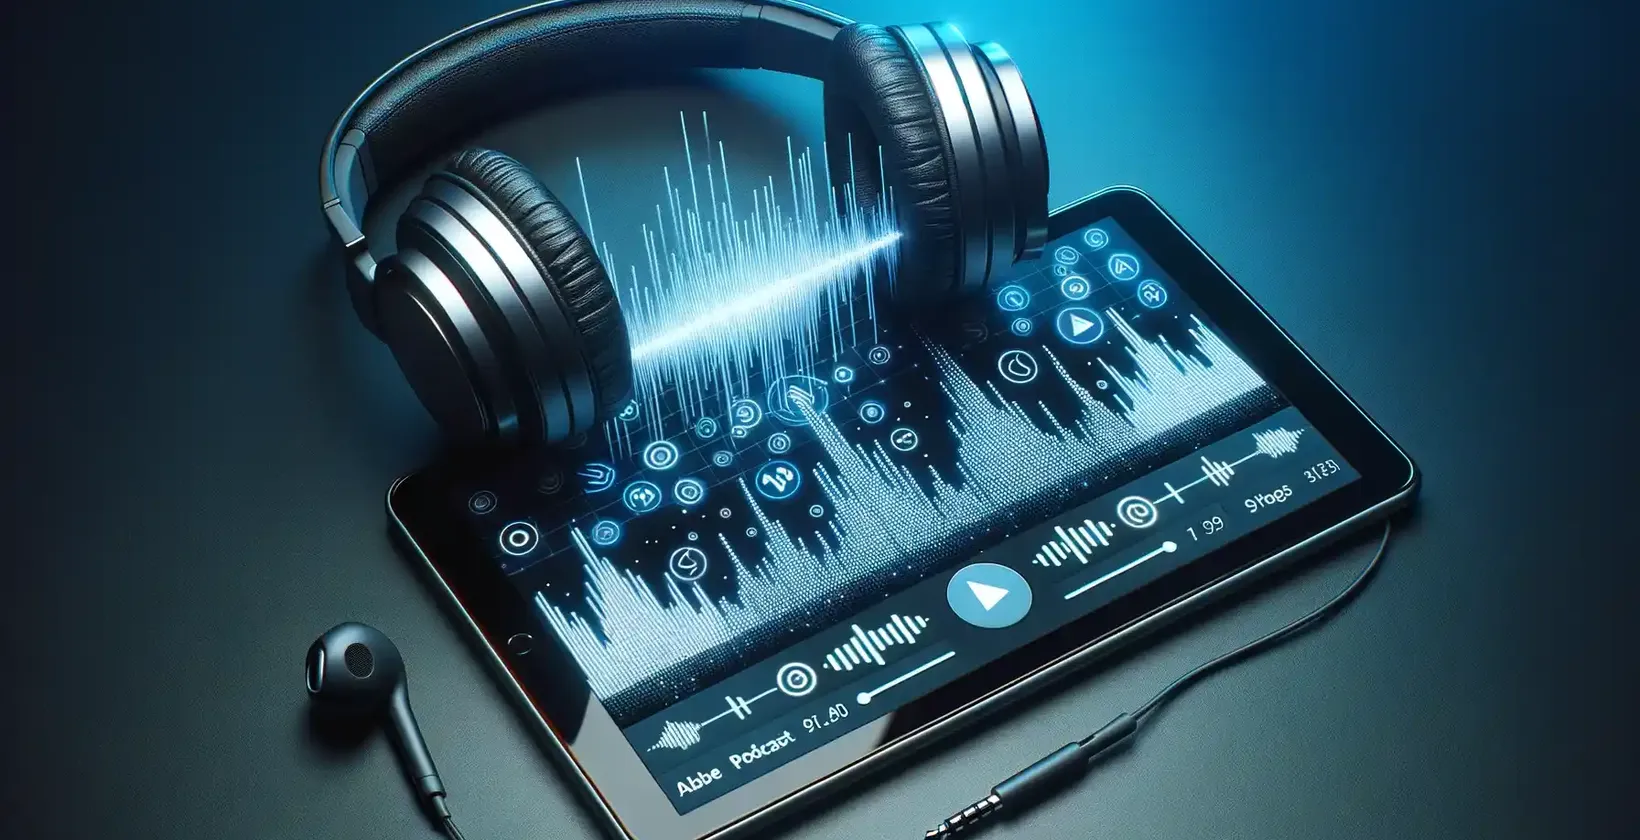 Lo schermo della tavoletta mostra in modo vibrante le onde sonore, i pulsanti digitali e le impostazioni su uno sfondo blu intenso.